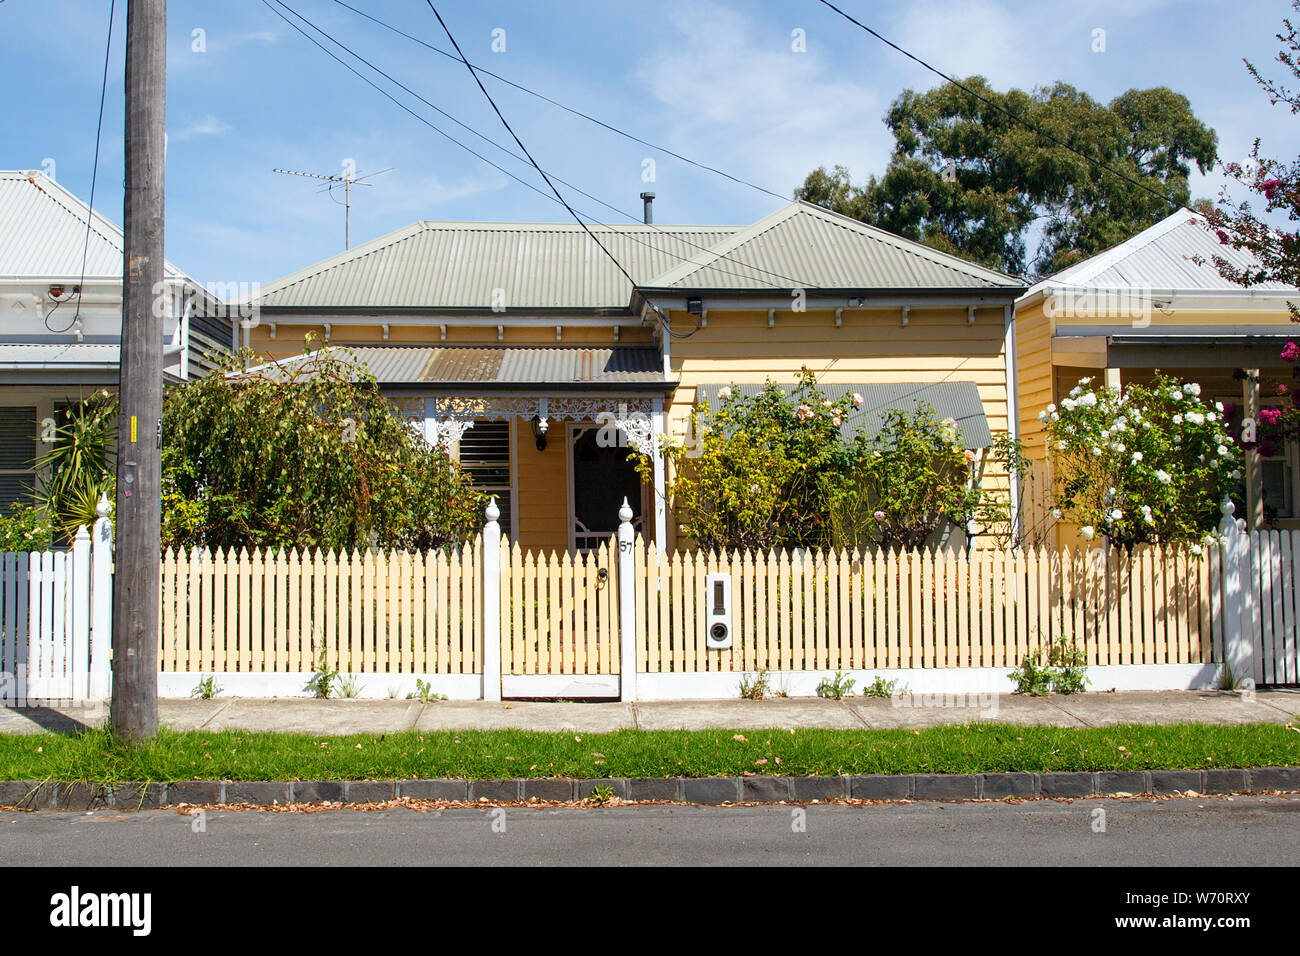 Williamstown, Australien: März, 2019: Traditionell gebaute Bungalow im 20. Jahrhundert australischen Stil mit einer Veranda, Veranda und Lattenzaun. Stockfoto